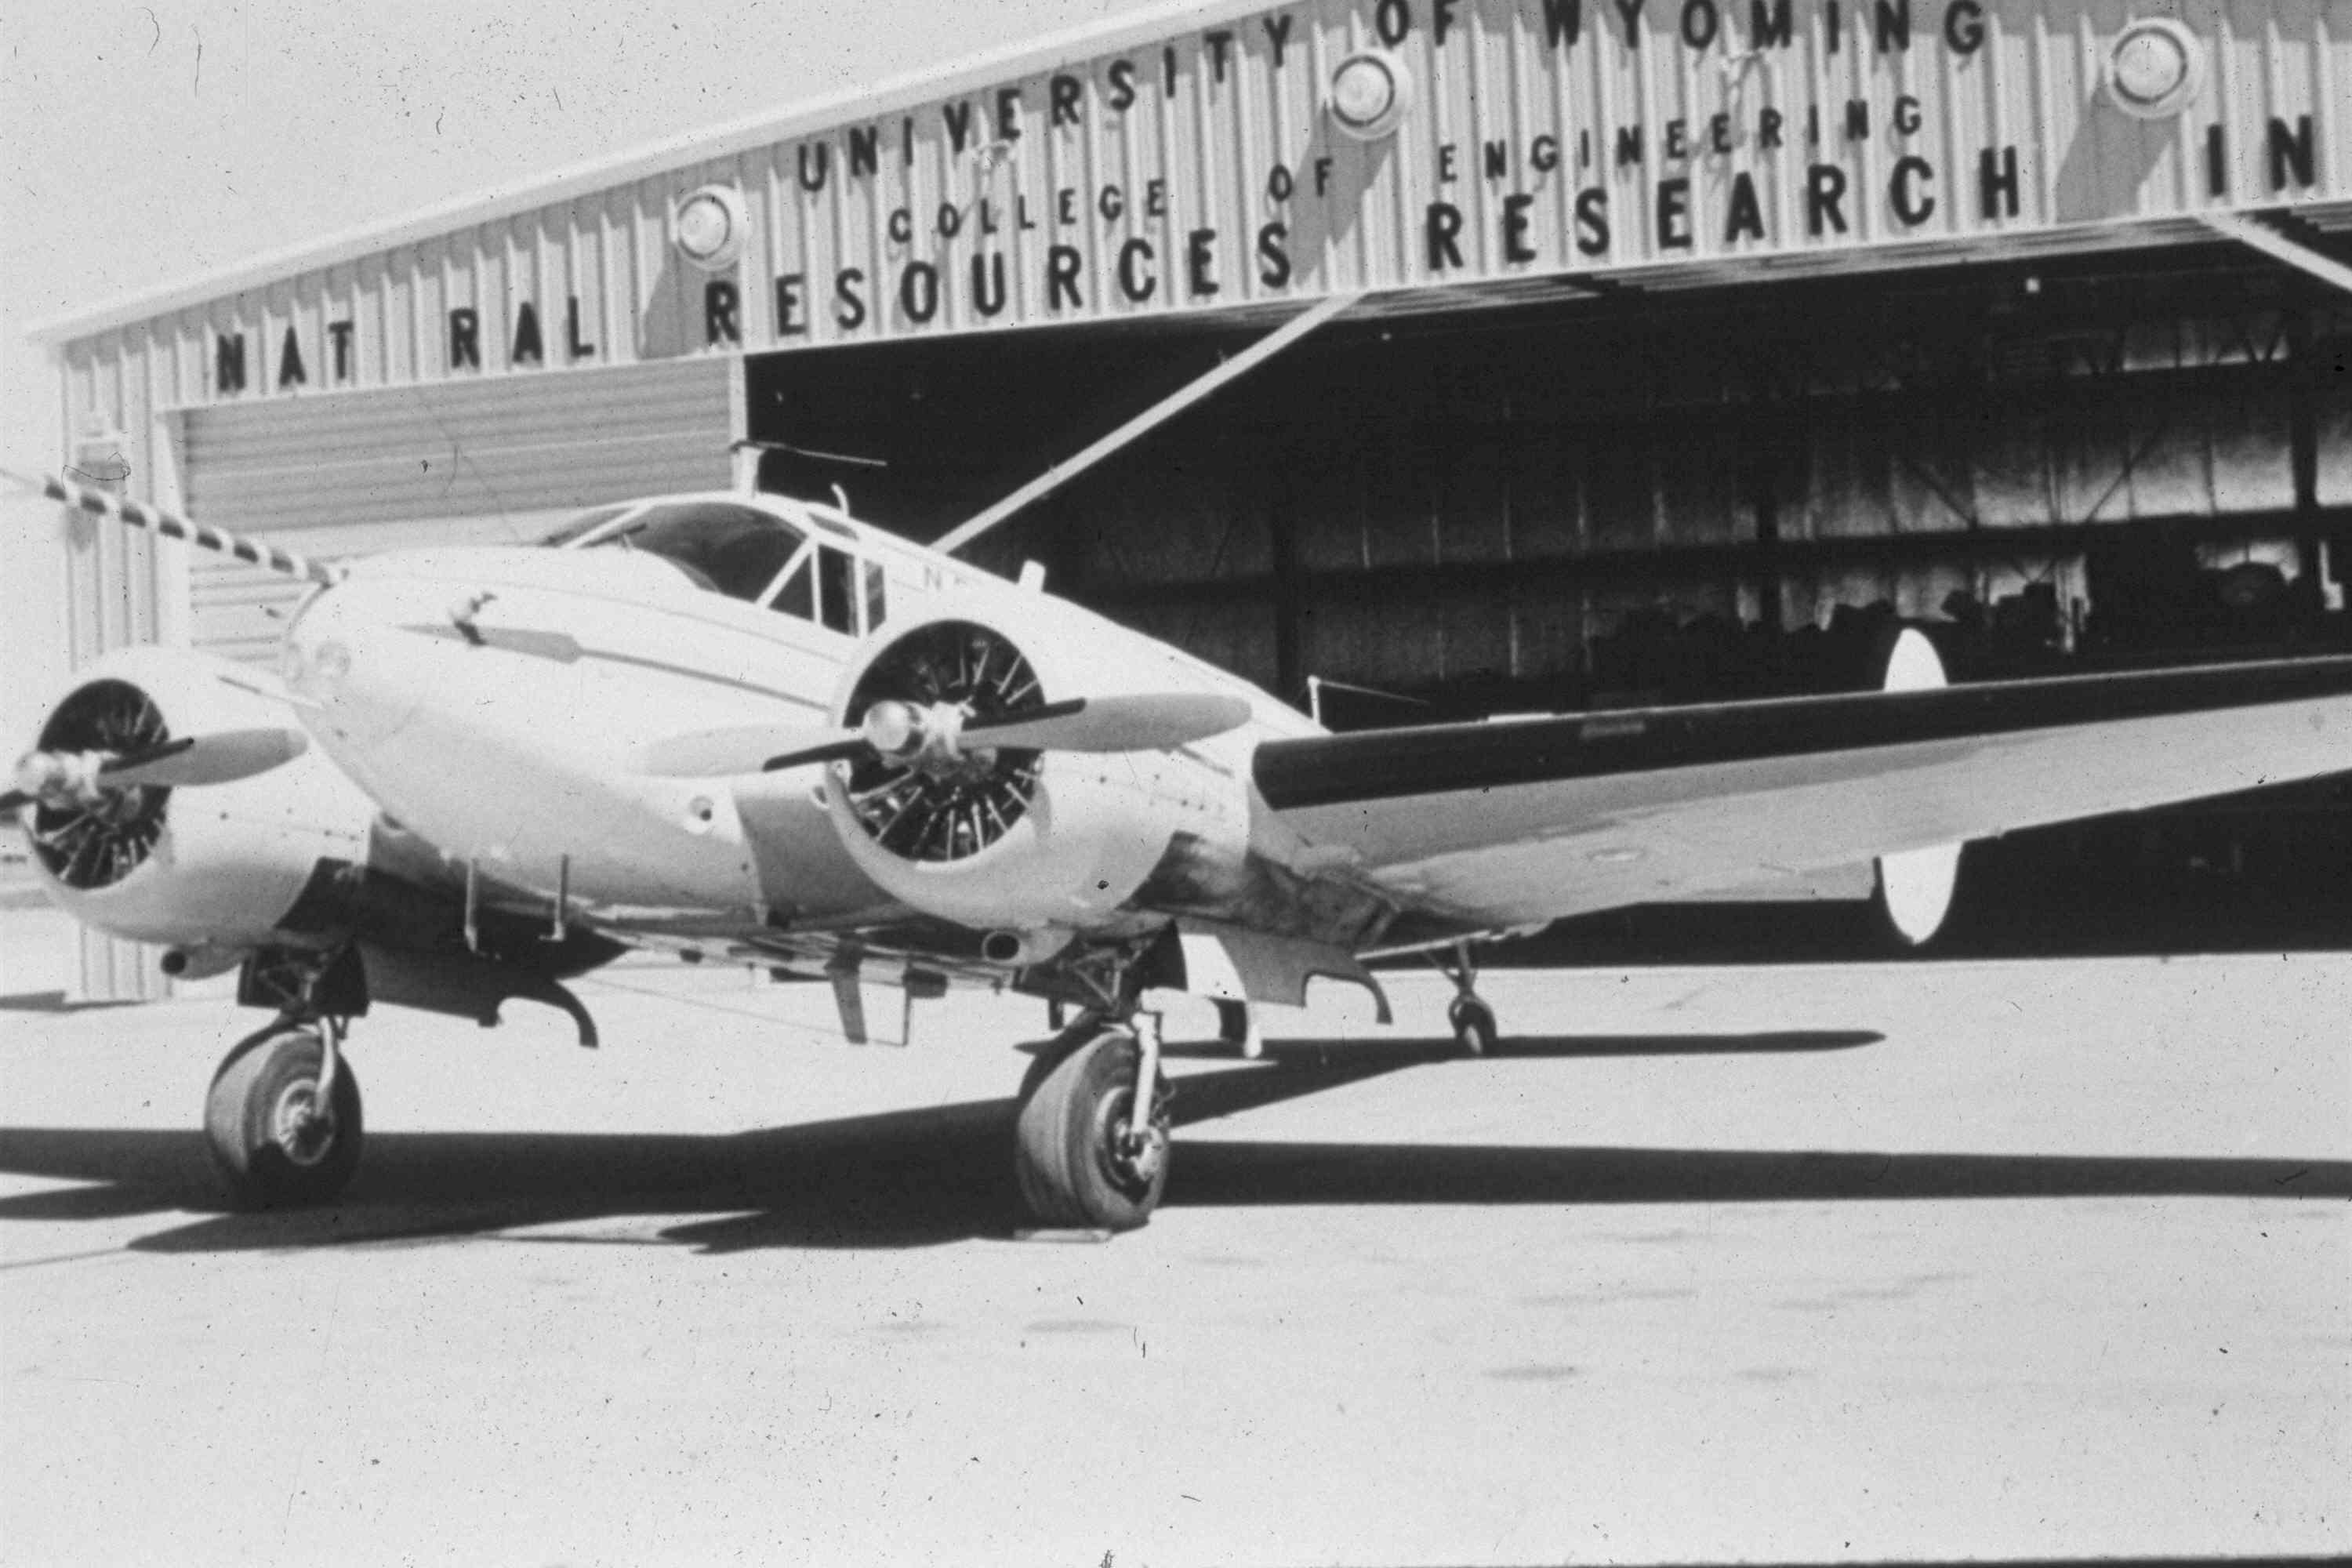 Twin Beech aircraft